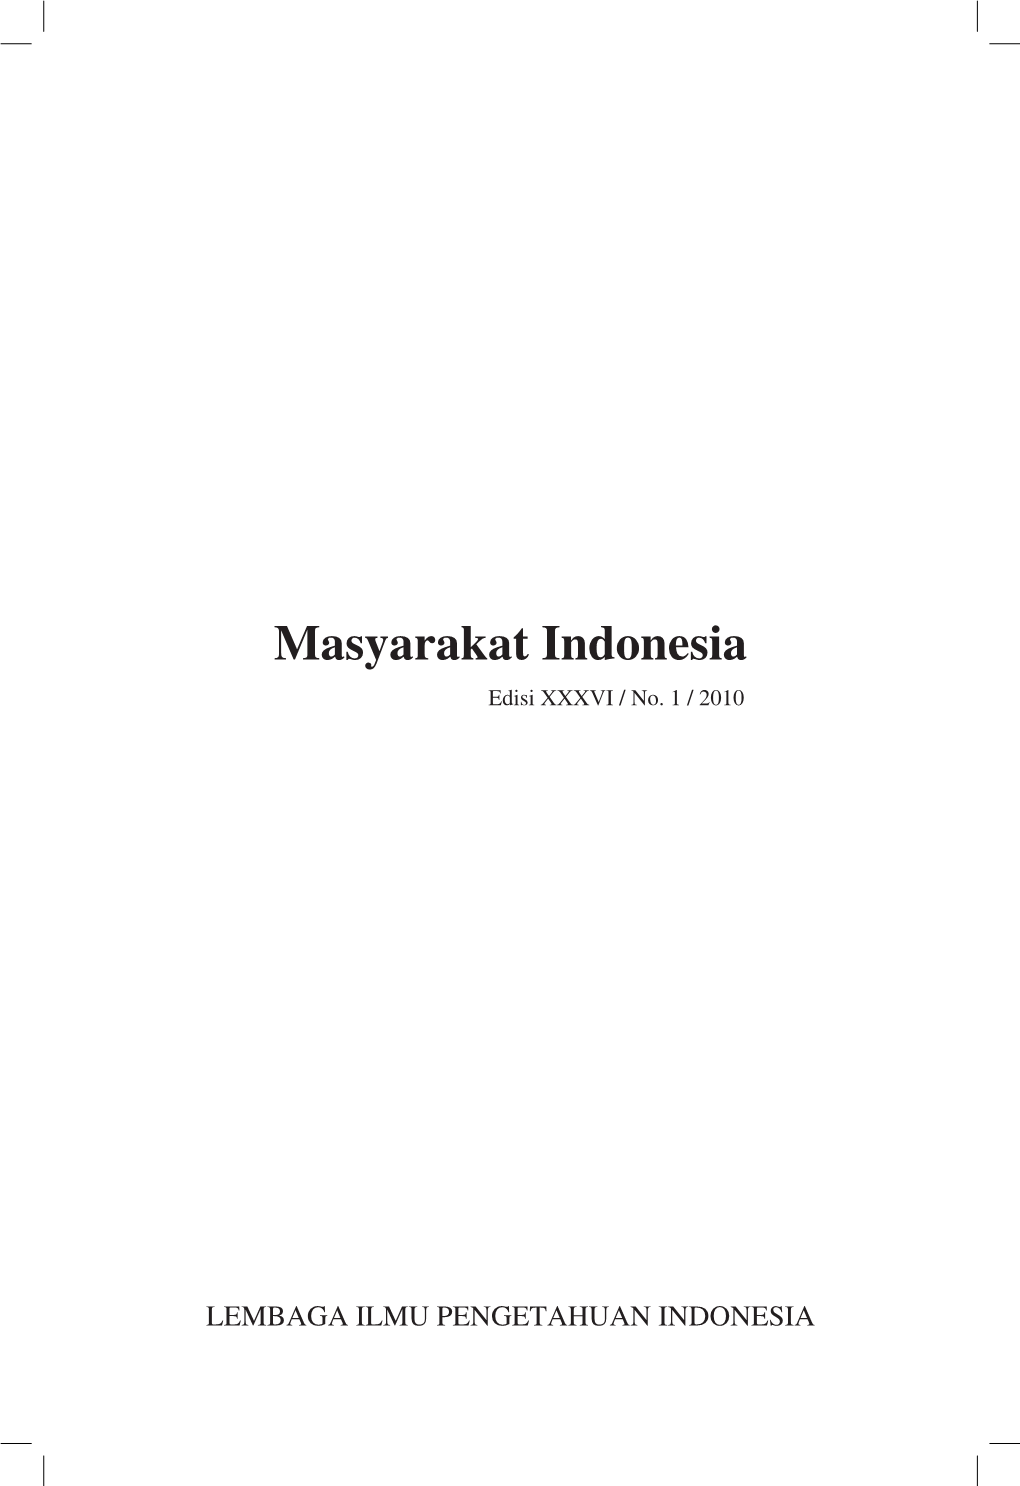 Masyarakat Indonesia Edisi XXXVI / No